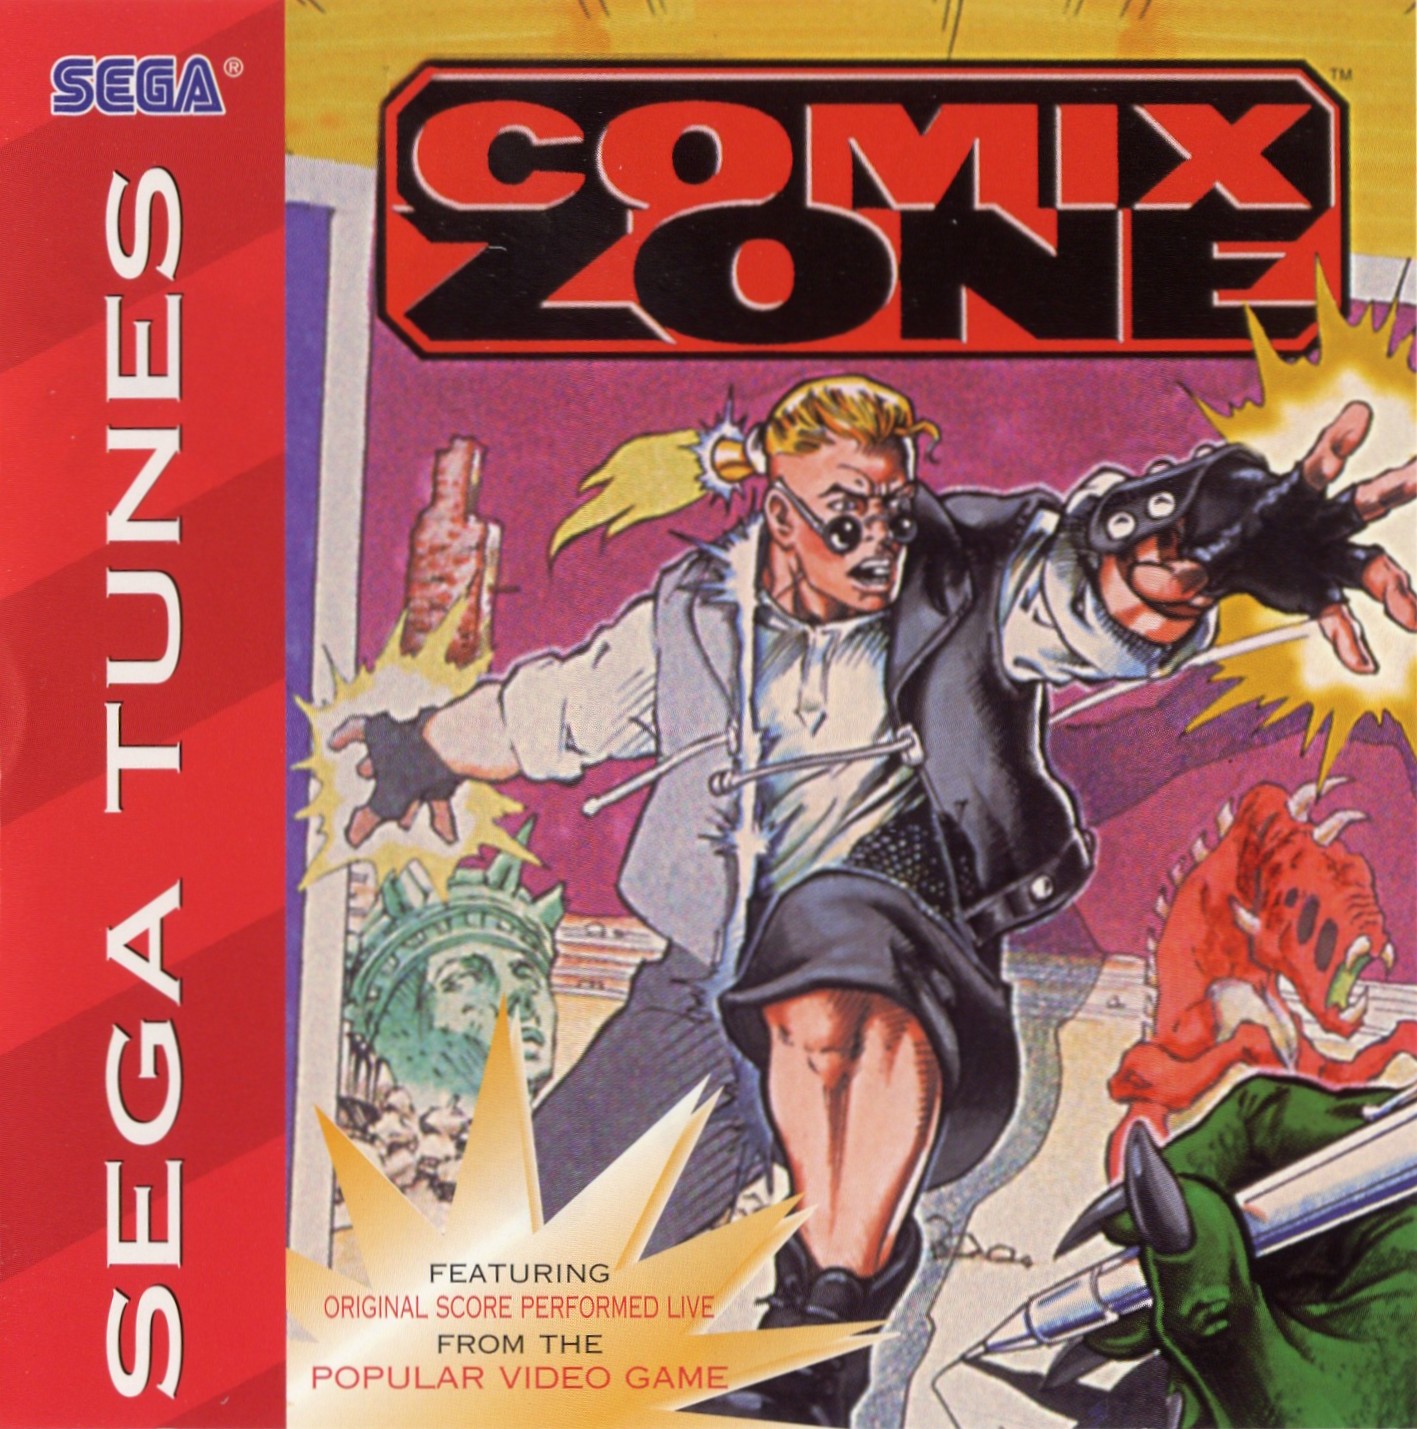 Игра на сега комикс. Комикс зон. Comix Zone Sega. Comix Zone обложка. Игра на сегу комикс зона.